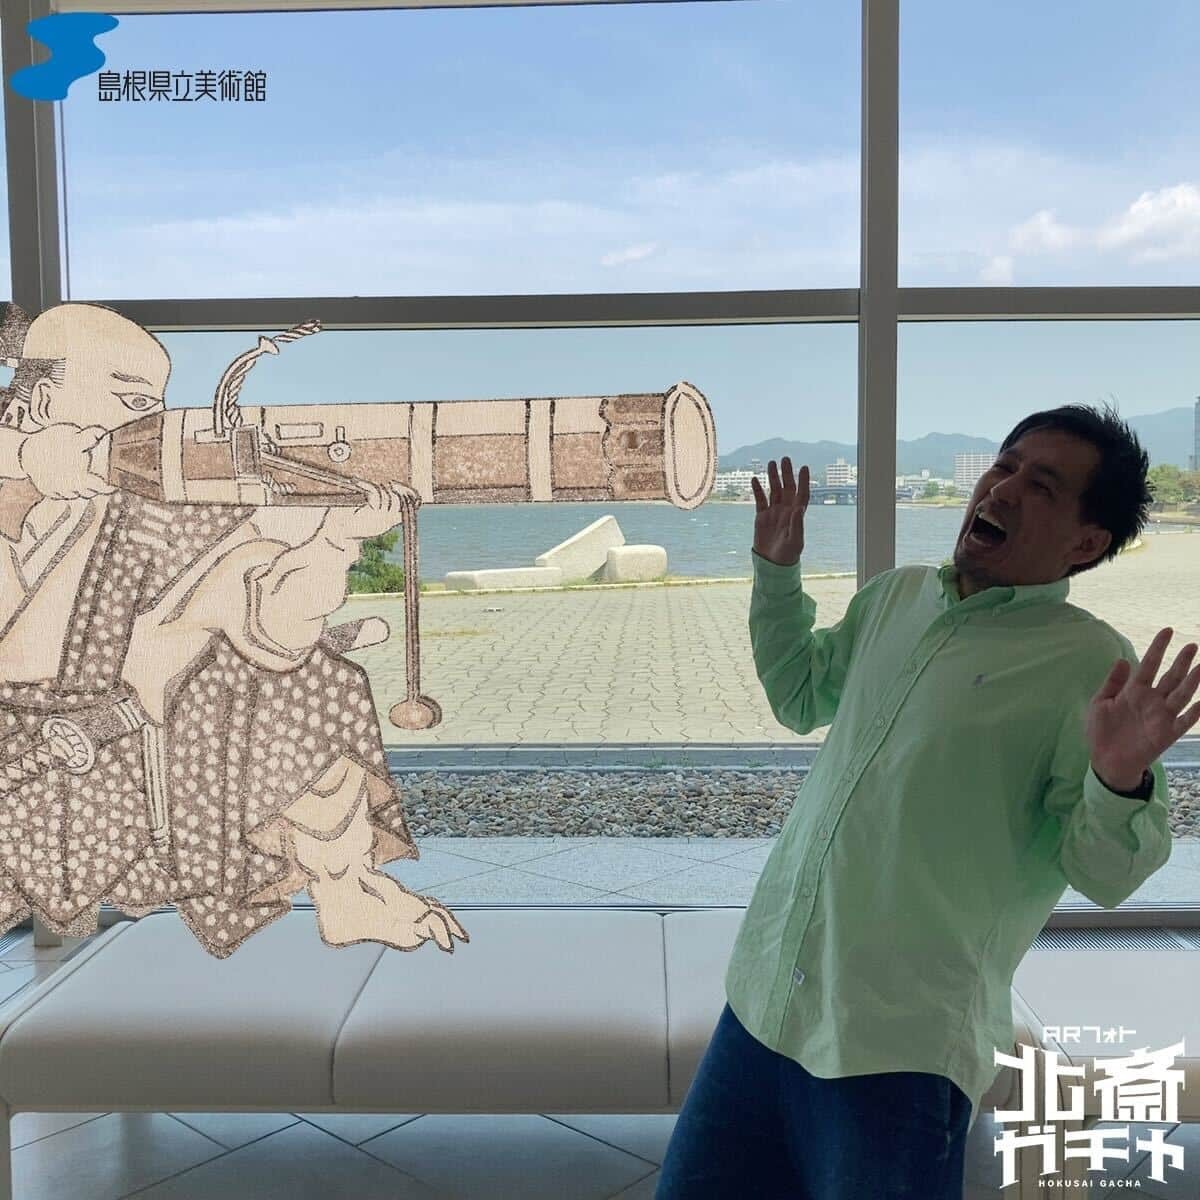 島根県立美術館の新サービス「ARフォト北斎ガチャ」で撮影できる写真のイメージ